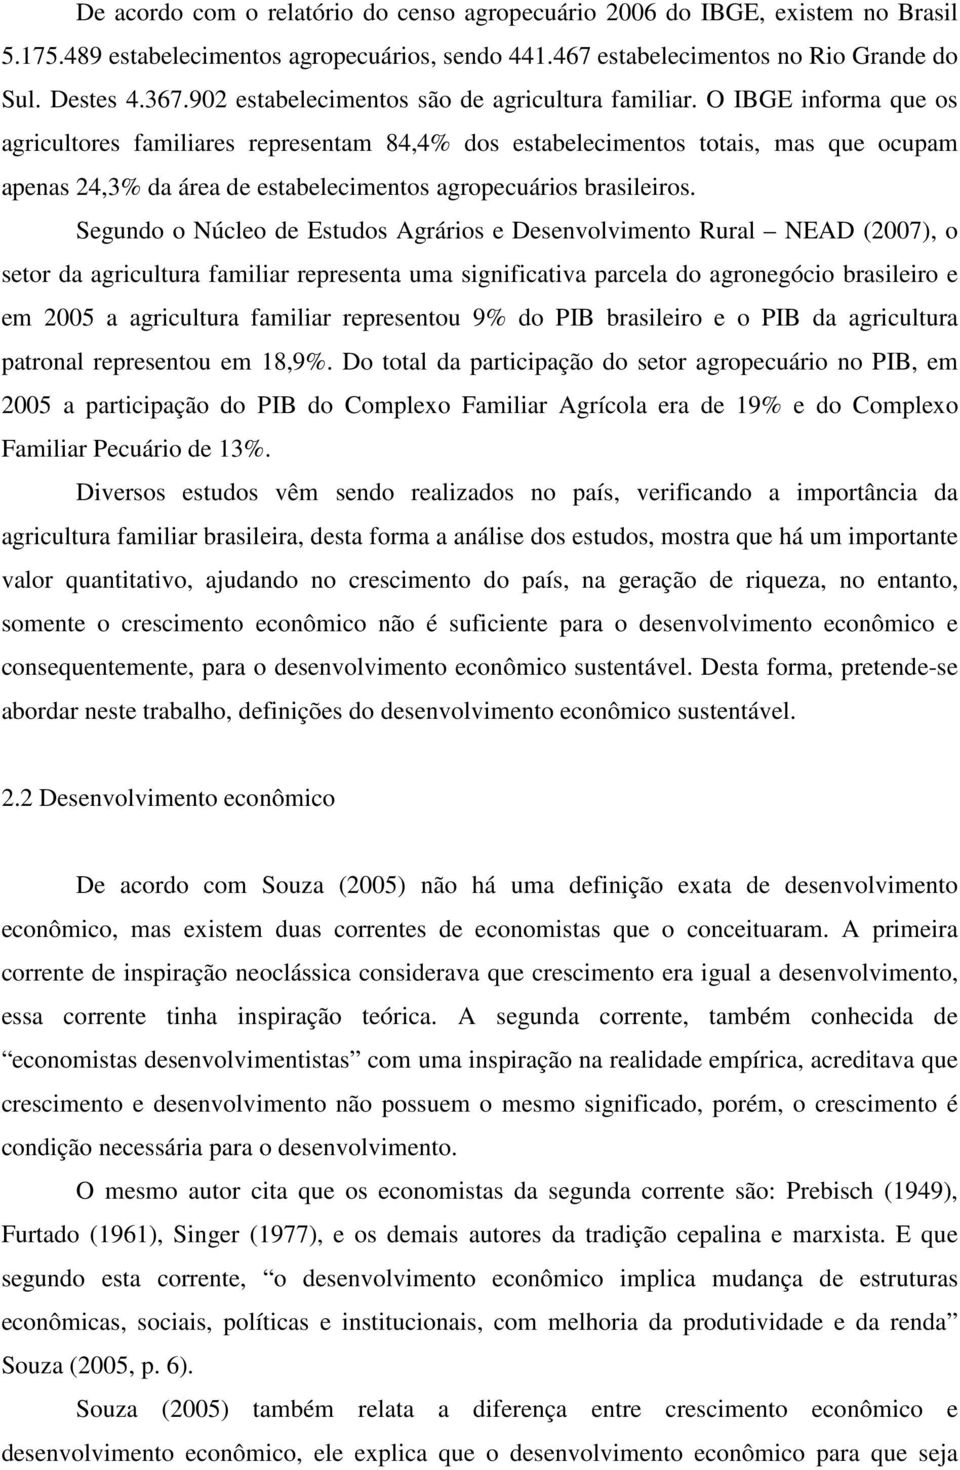 O IBGE informa que os agricultores familiares representam 84,4% dos estabelecimentos totais, mas que ocupam apenas 24,3% da área de estabelecimentos agropecuários brasileiros.